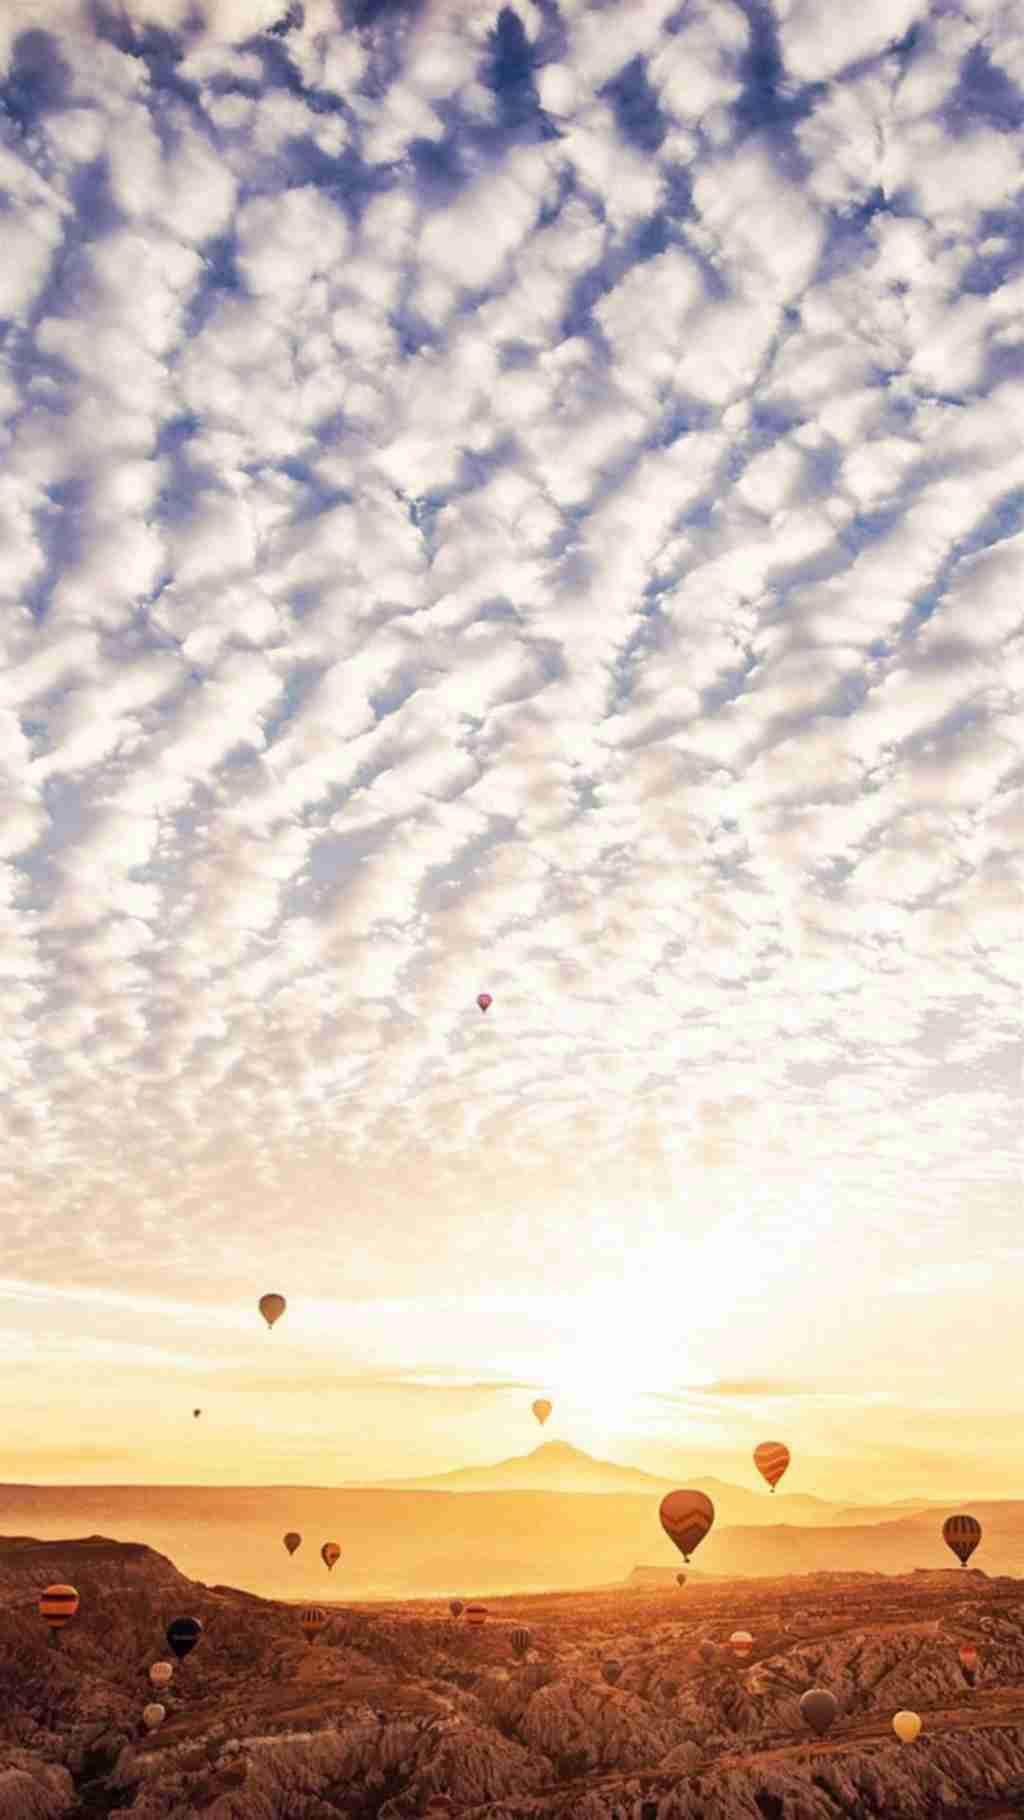 梦幻七彩氢气球风景图片手机壁纸